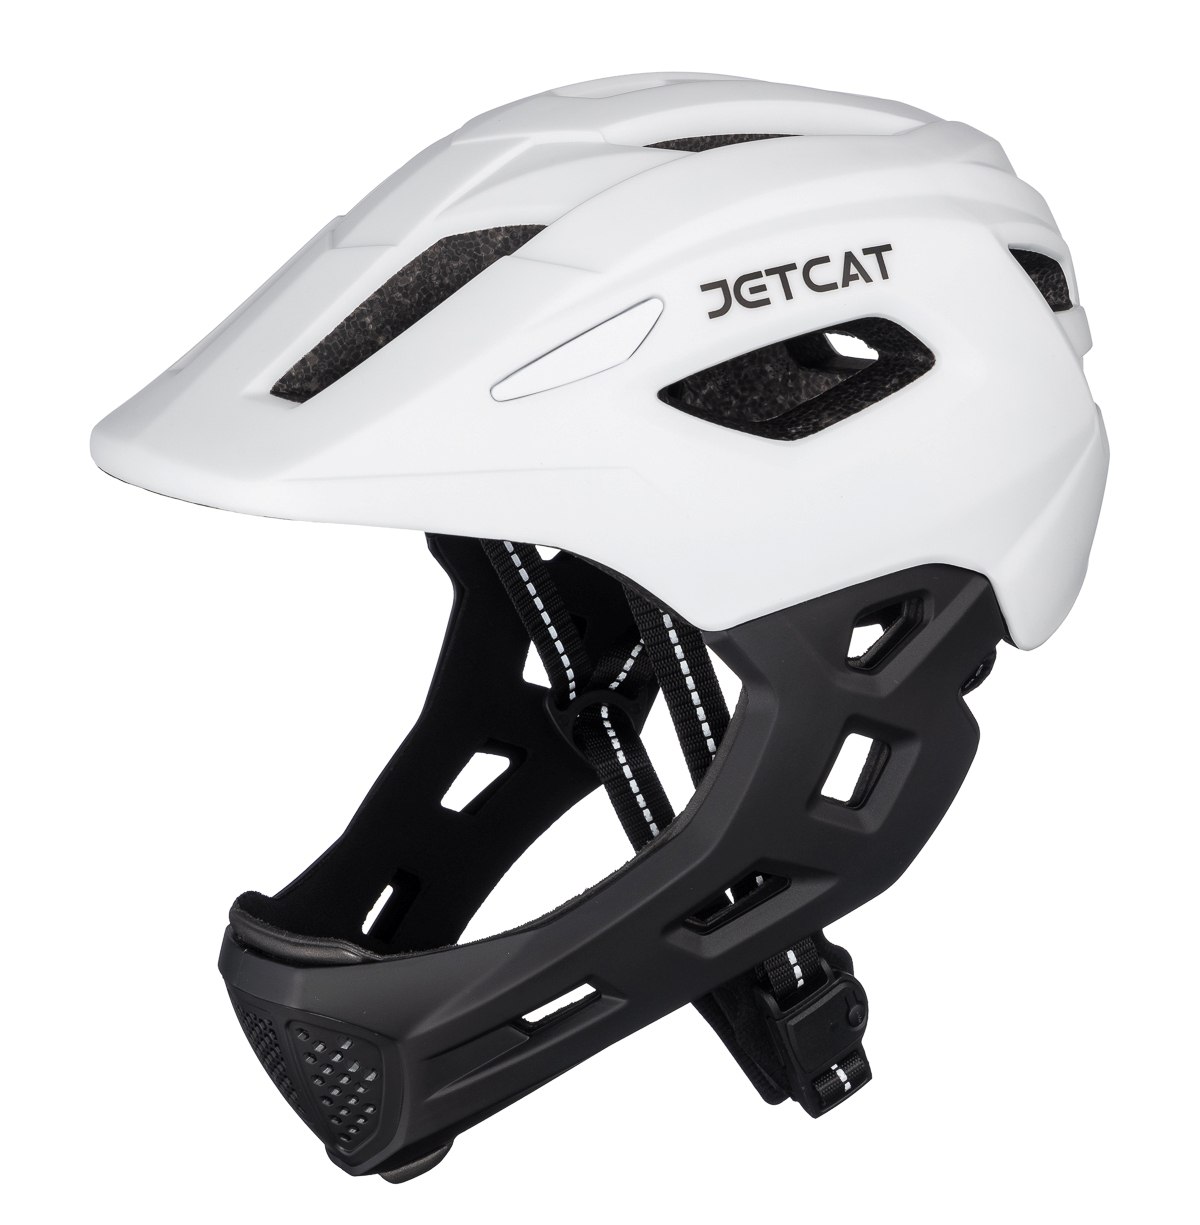 Шлем защитный детский JetCat Start White/Black размер S 52-56 см велосипедный защитный шлем crazy safety black shark чёрная акула